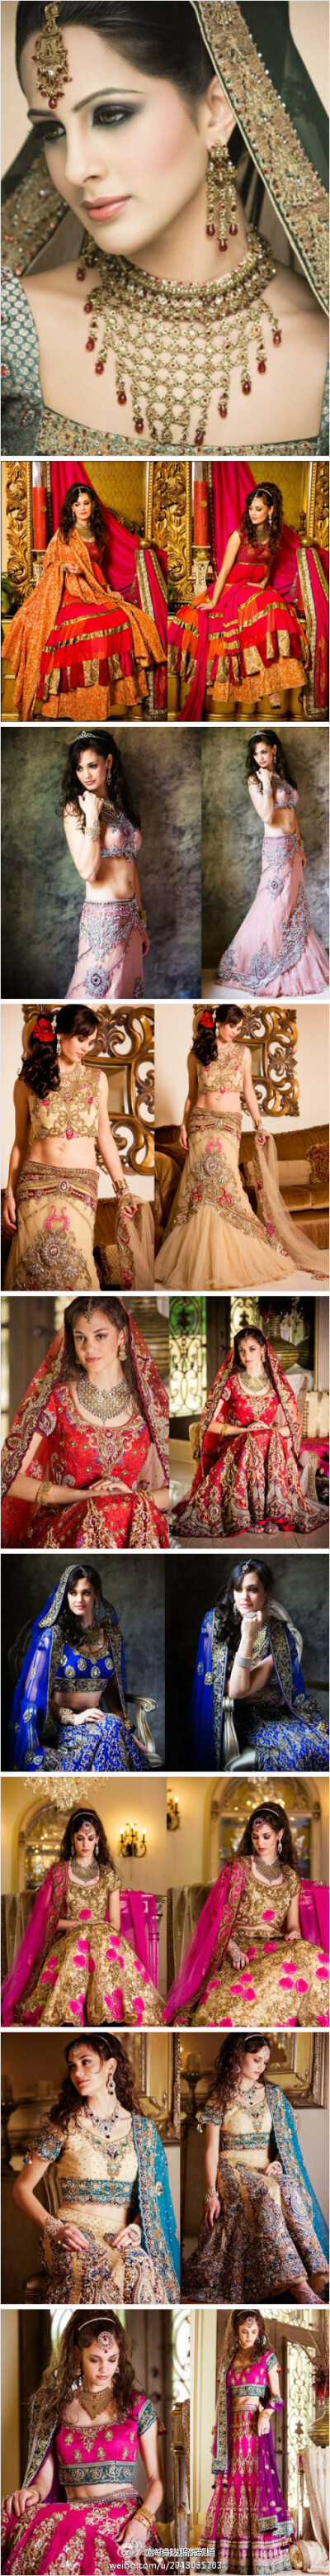 美的印度新娘装，性感与传统并存，惊艳的异域风情，美翻了！